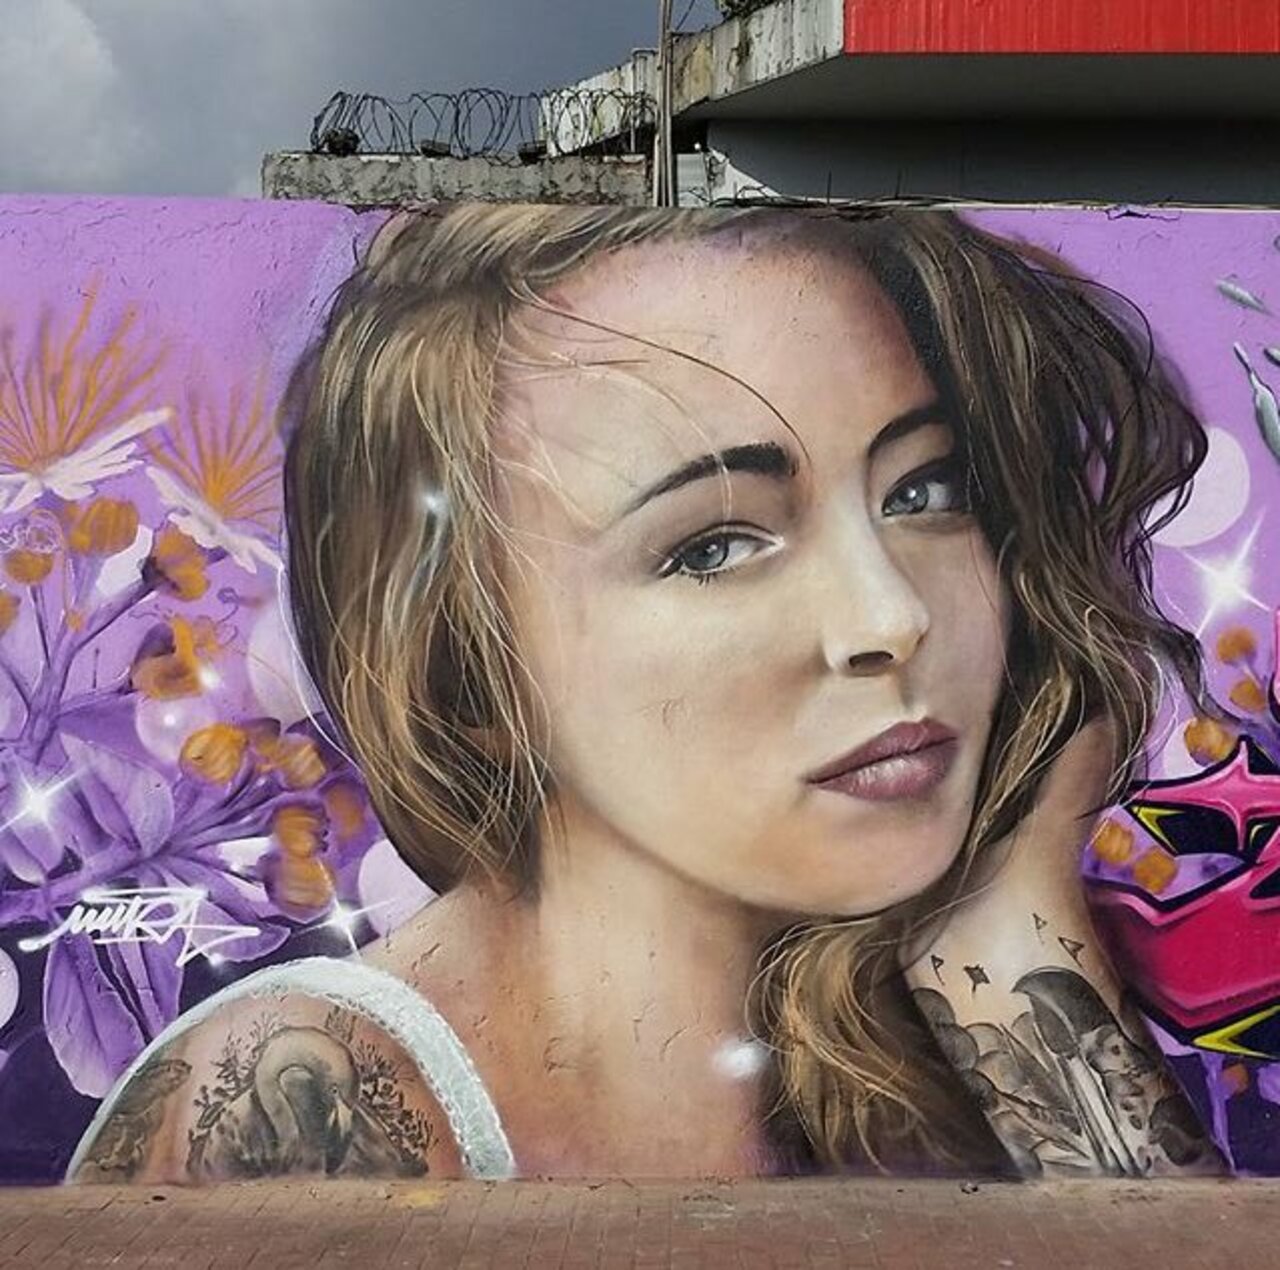 New Street Art by Mantarea 

#art #graffiti #mural #streetart https://t.co/MO1WfQsfNm